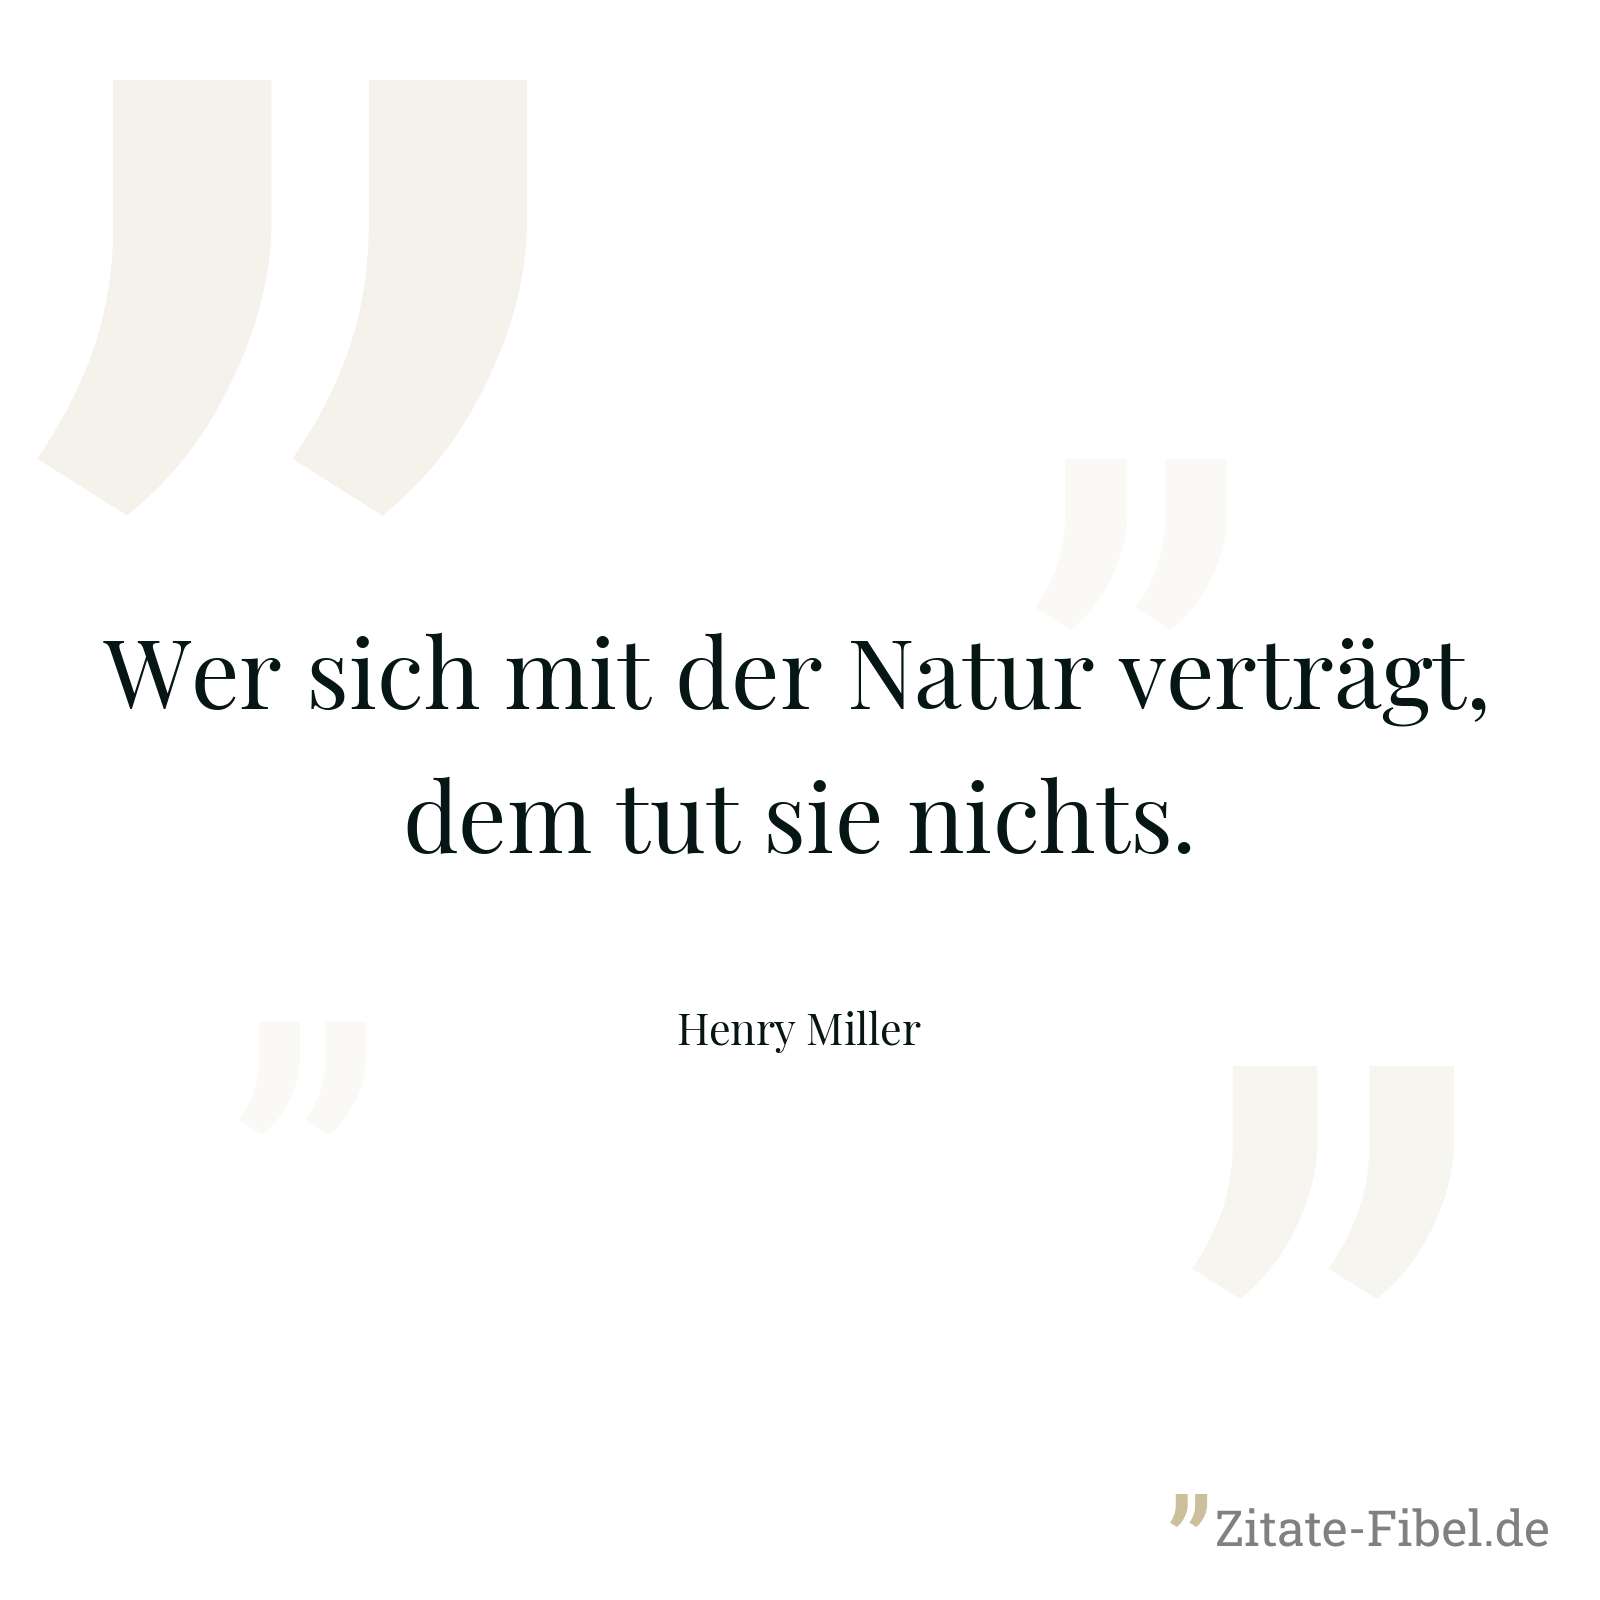 Wer sich mit der Natur verträgt, dem tut sie nichts. - Henry Miller